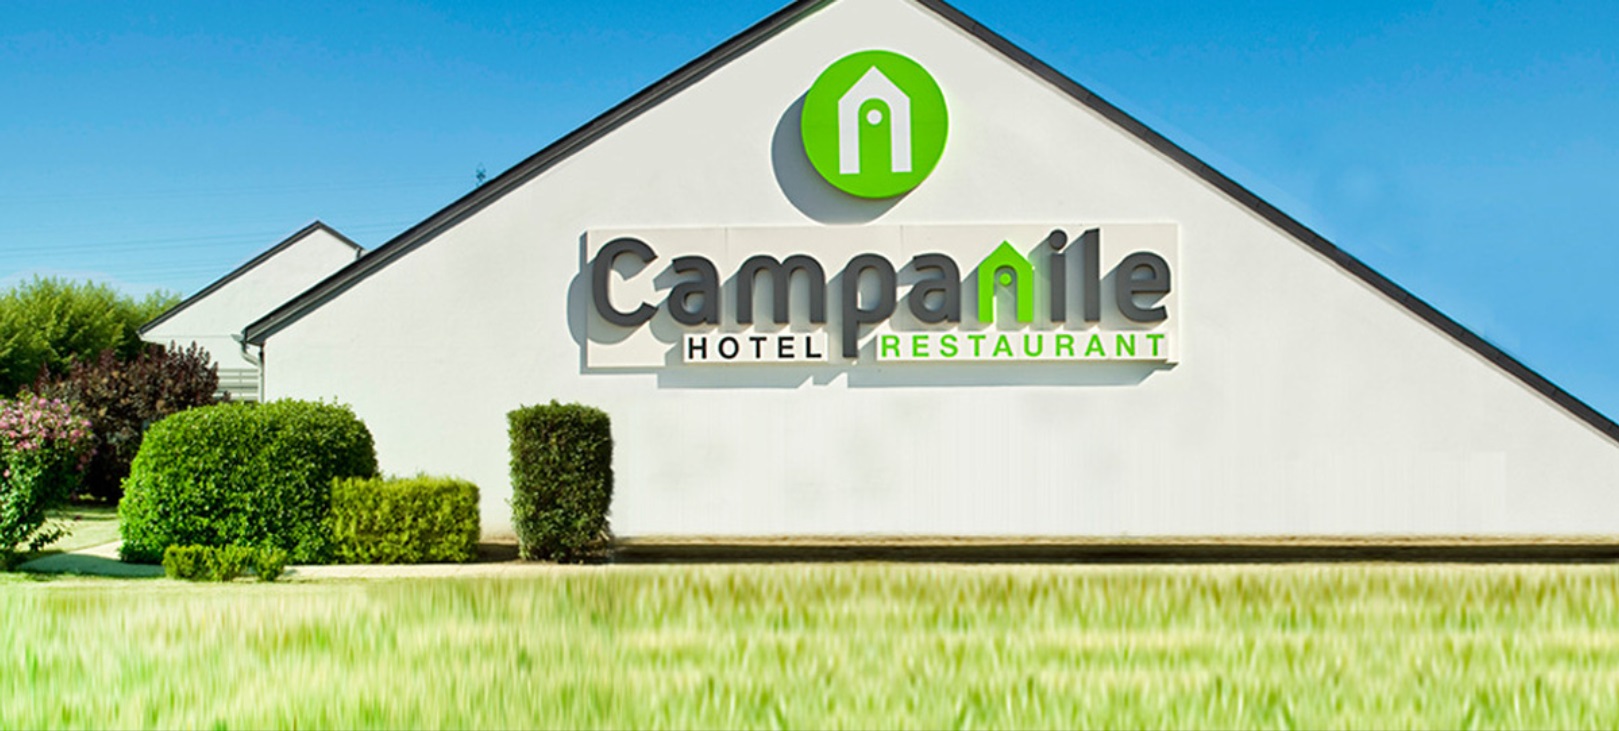  Hôtel Restaurant Campanile Montpellier Le Millénaire - Hôtel à Montpellier 